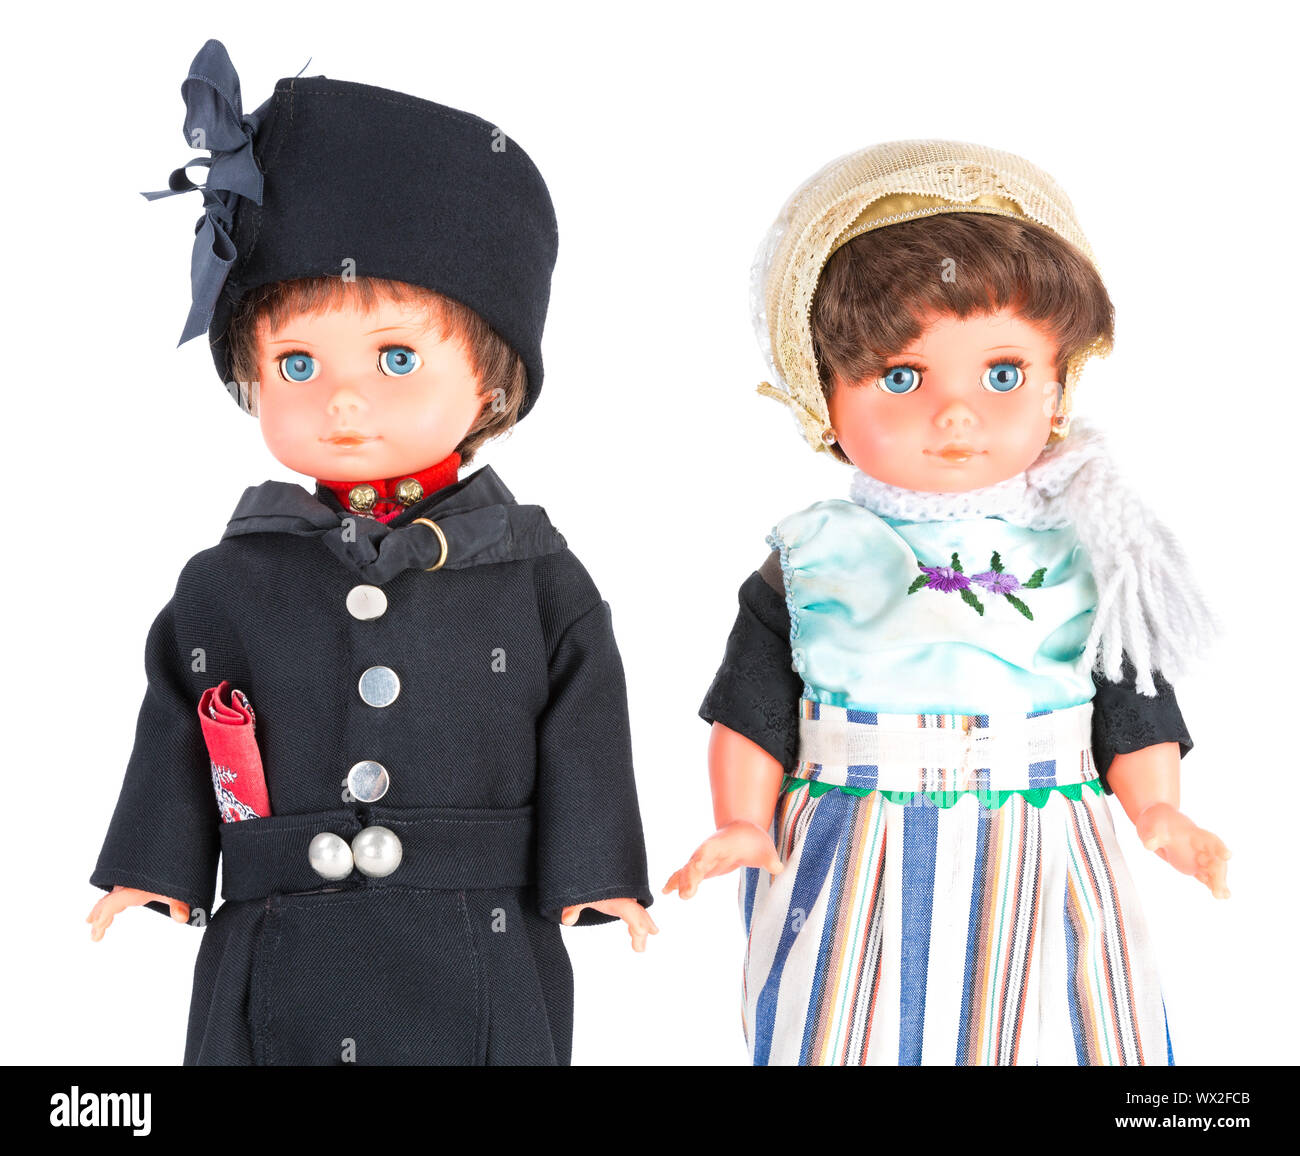 Deux marionnettes avec les vêtements traditionnels d'Urk, un village de pêcheurs aux Pays-Bas Banque D'Images